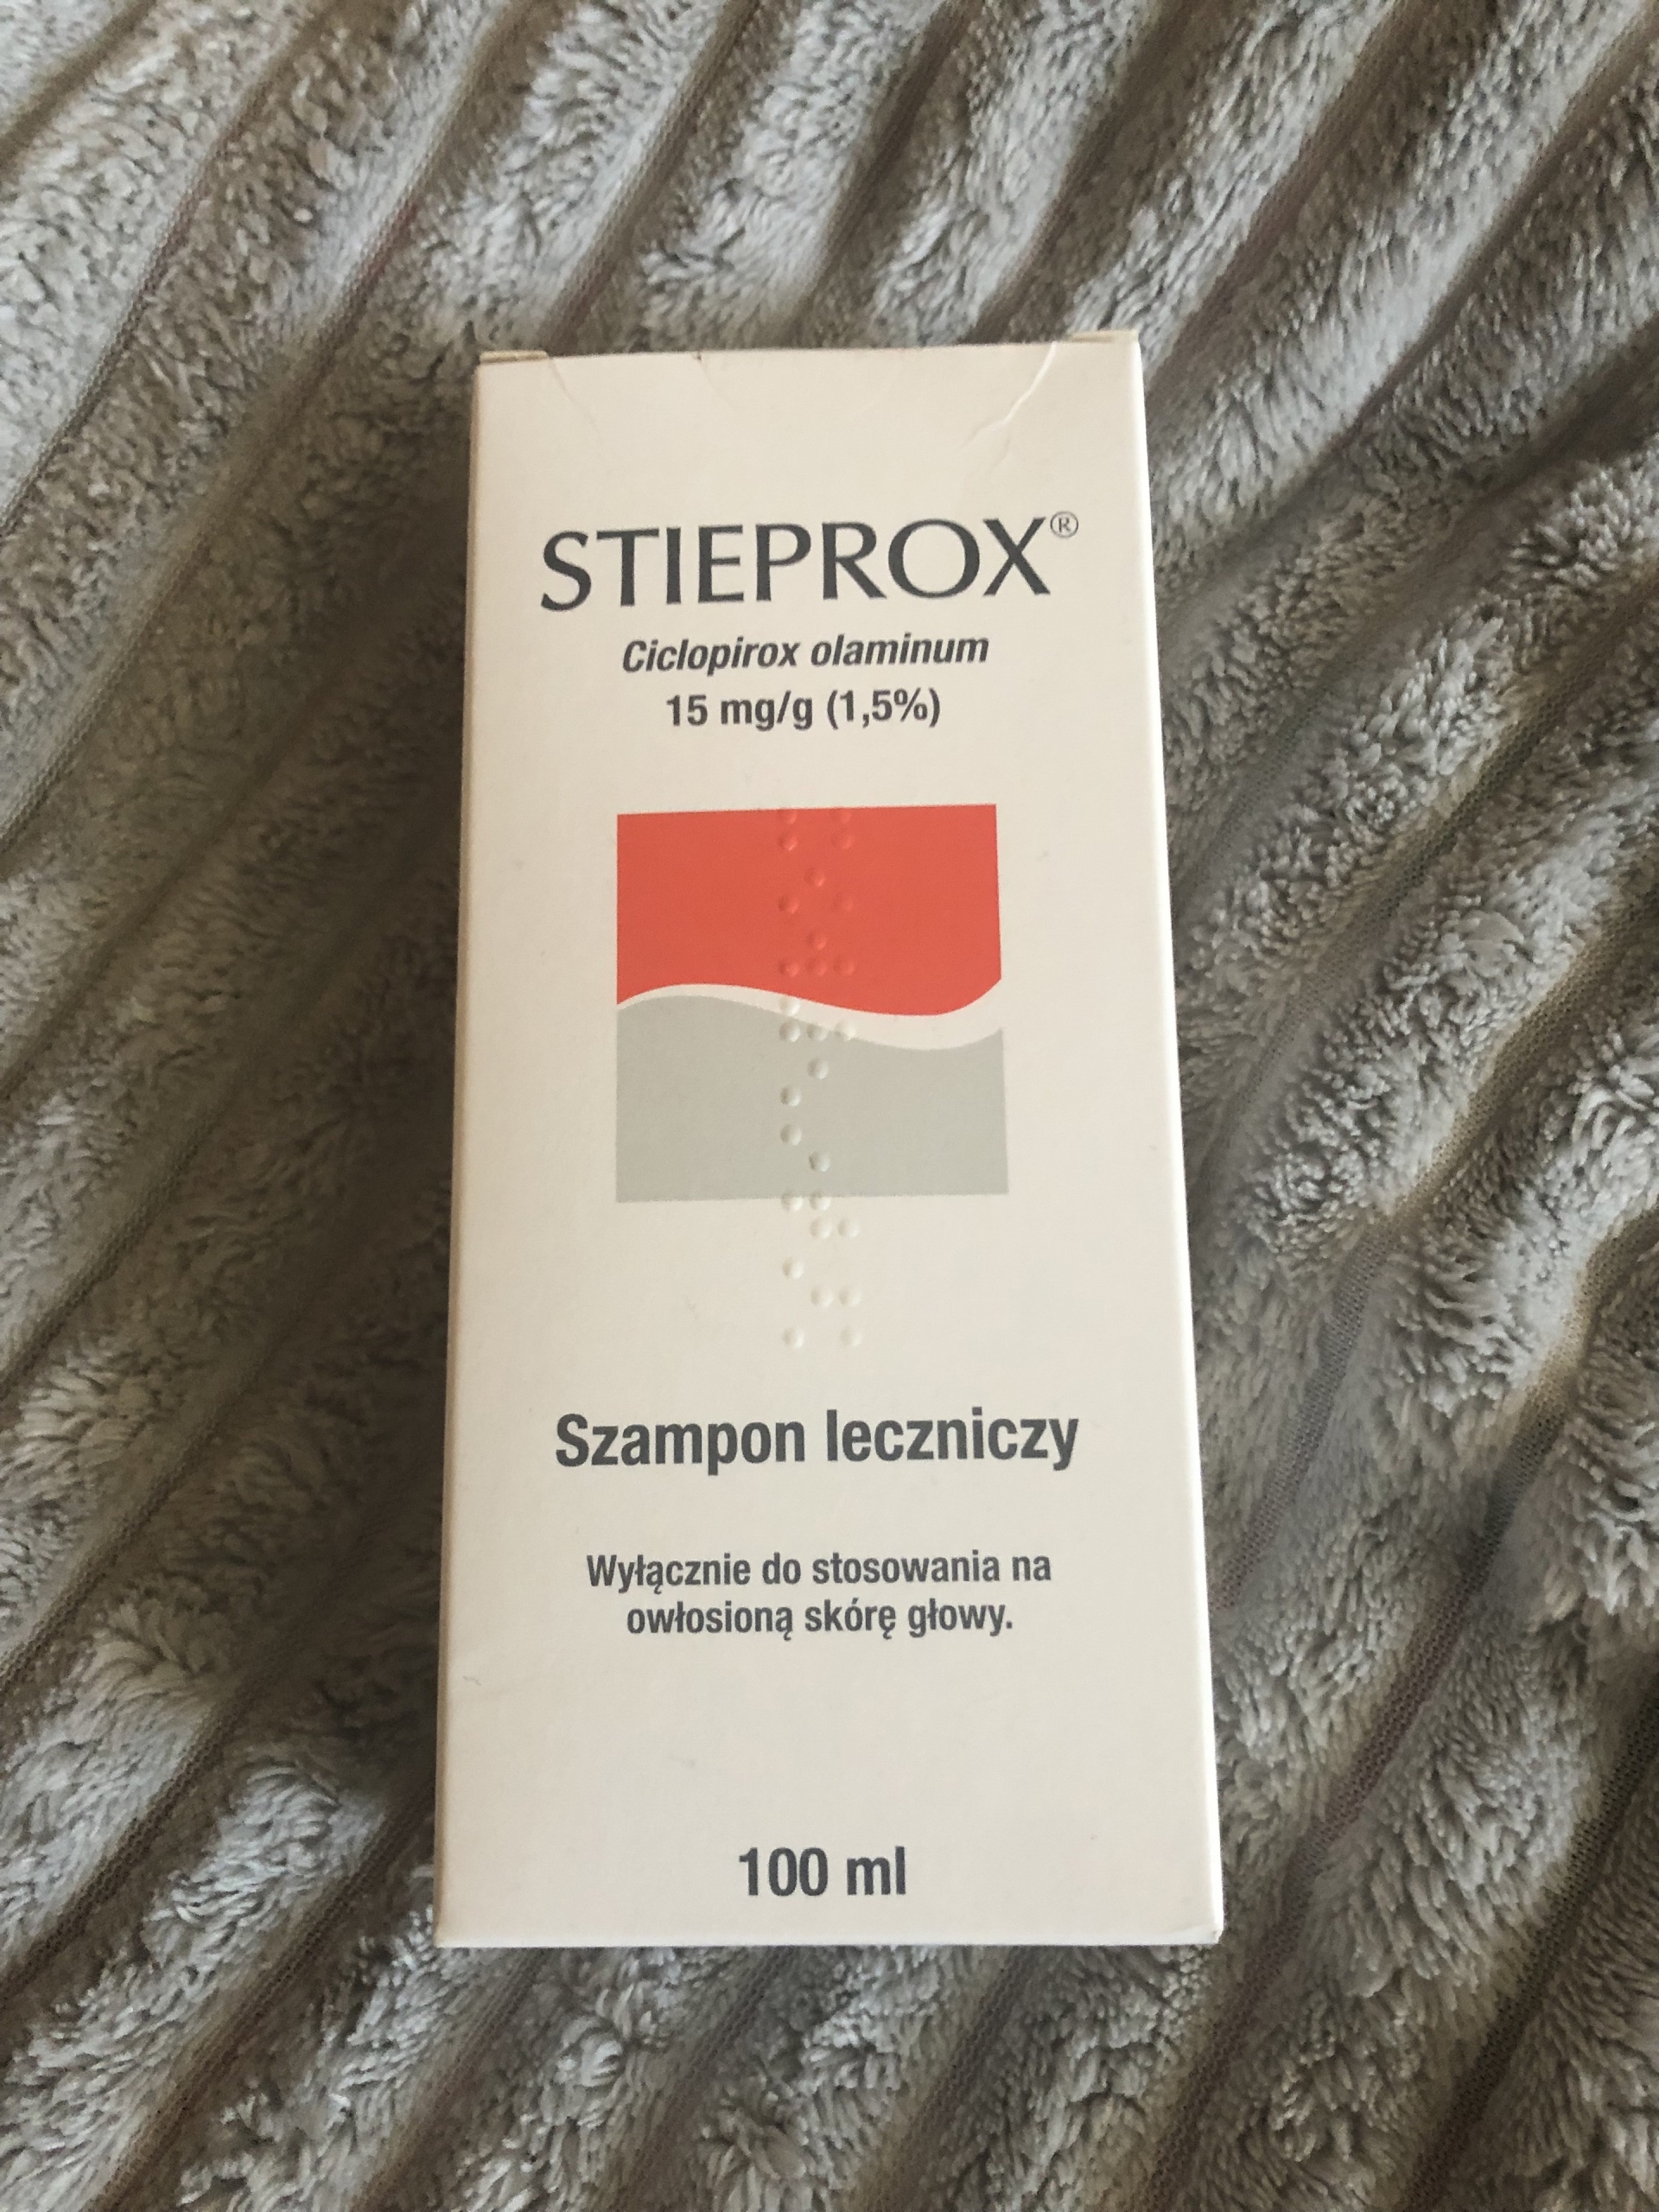 stieprox 1 5 15 mg g szampon leczniczy opinie